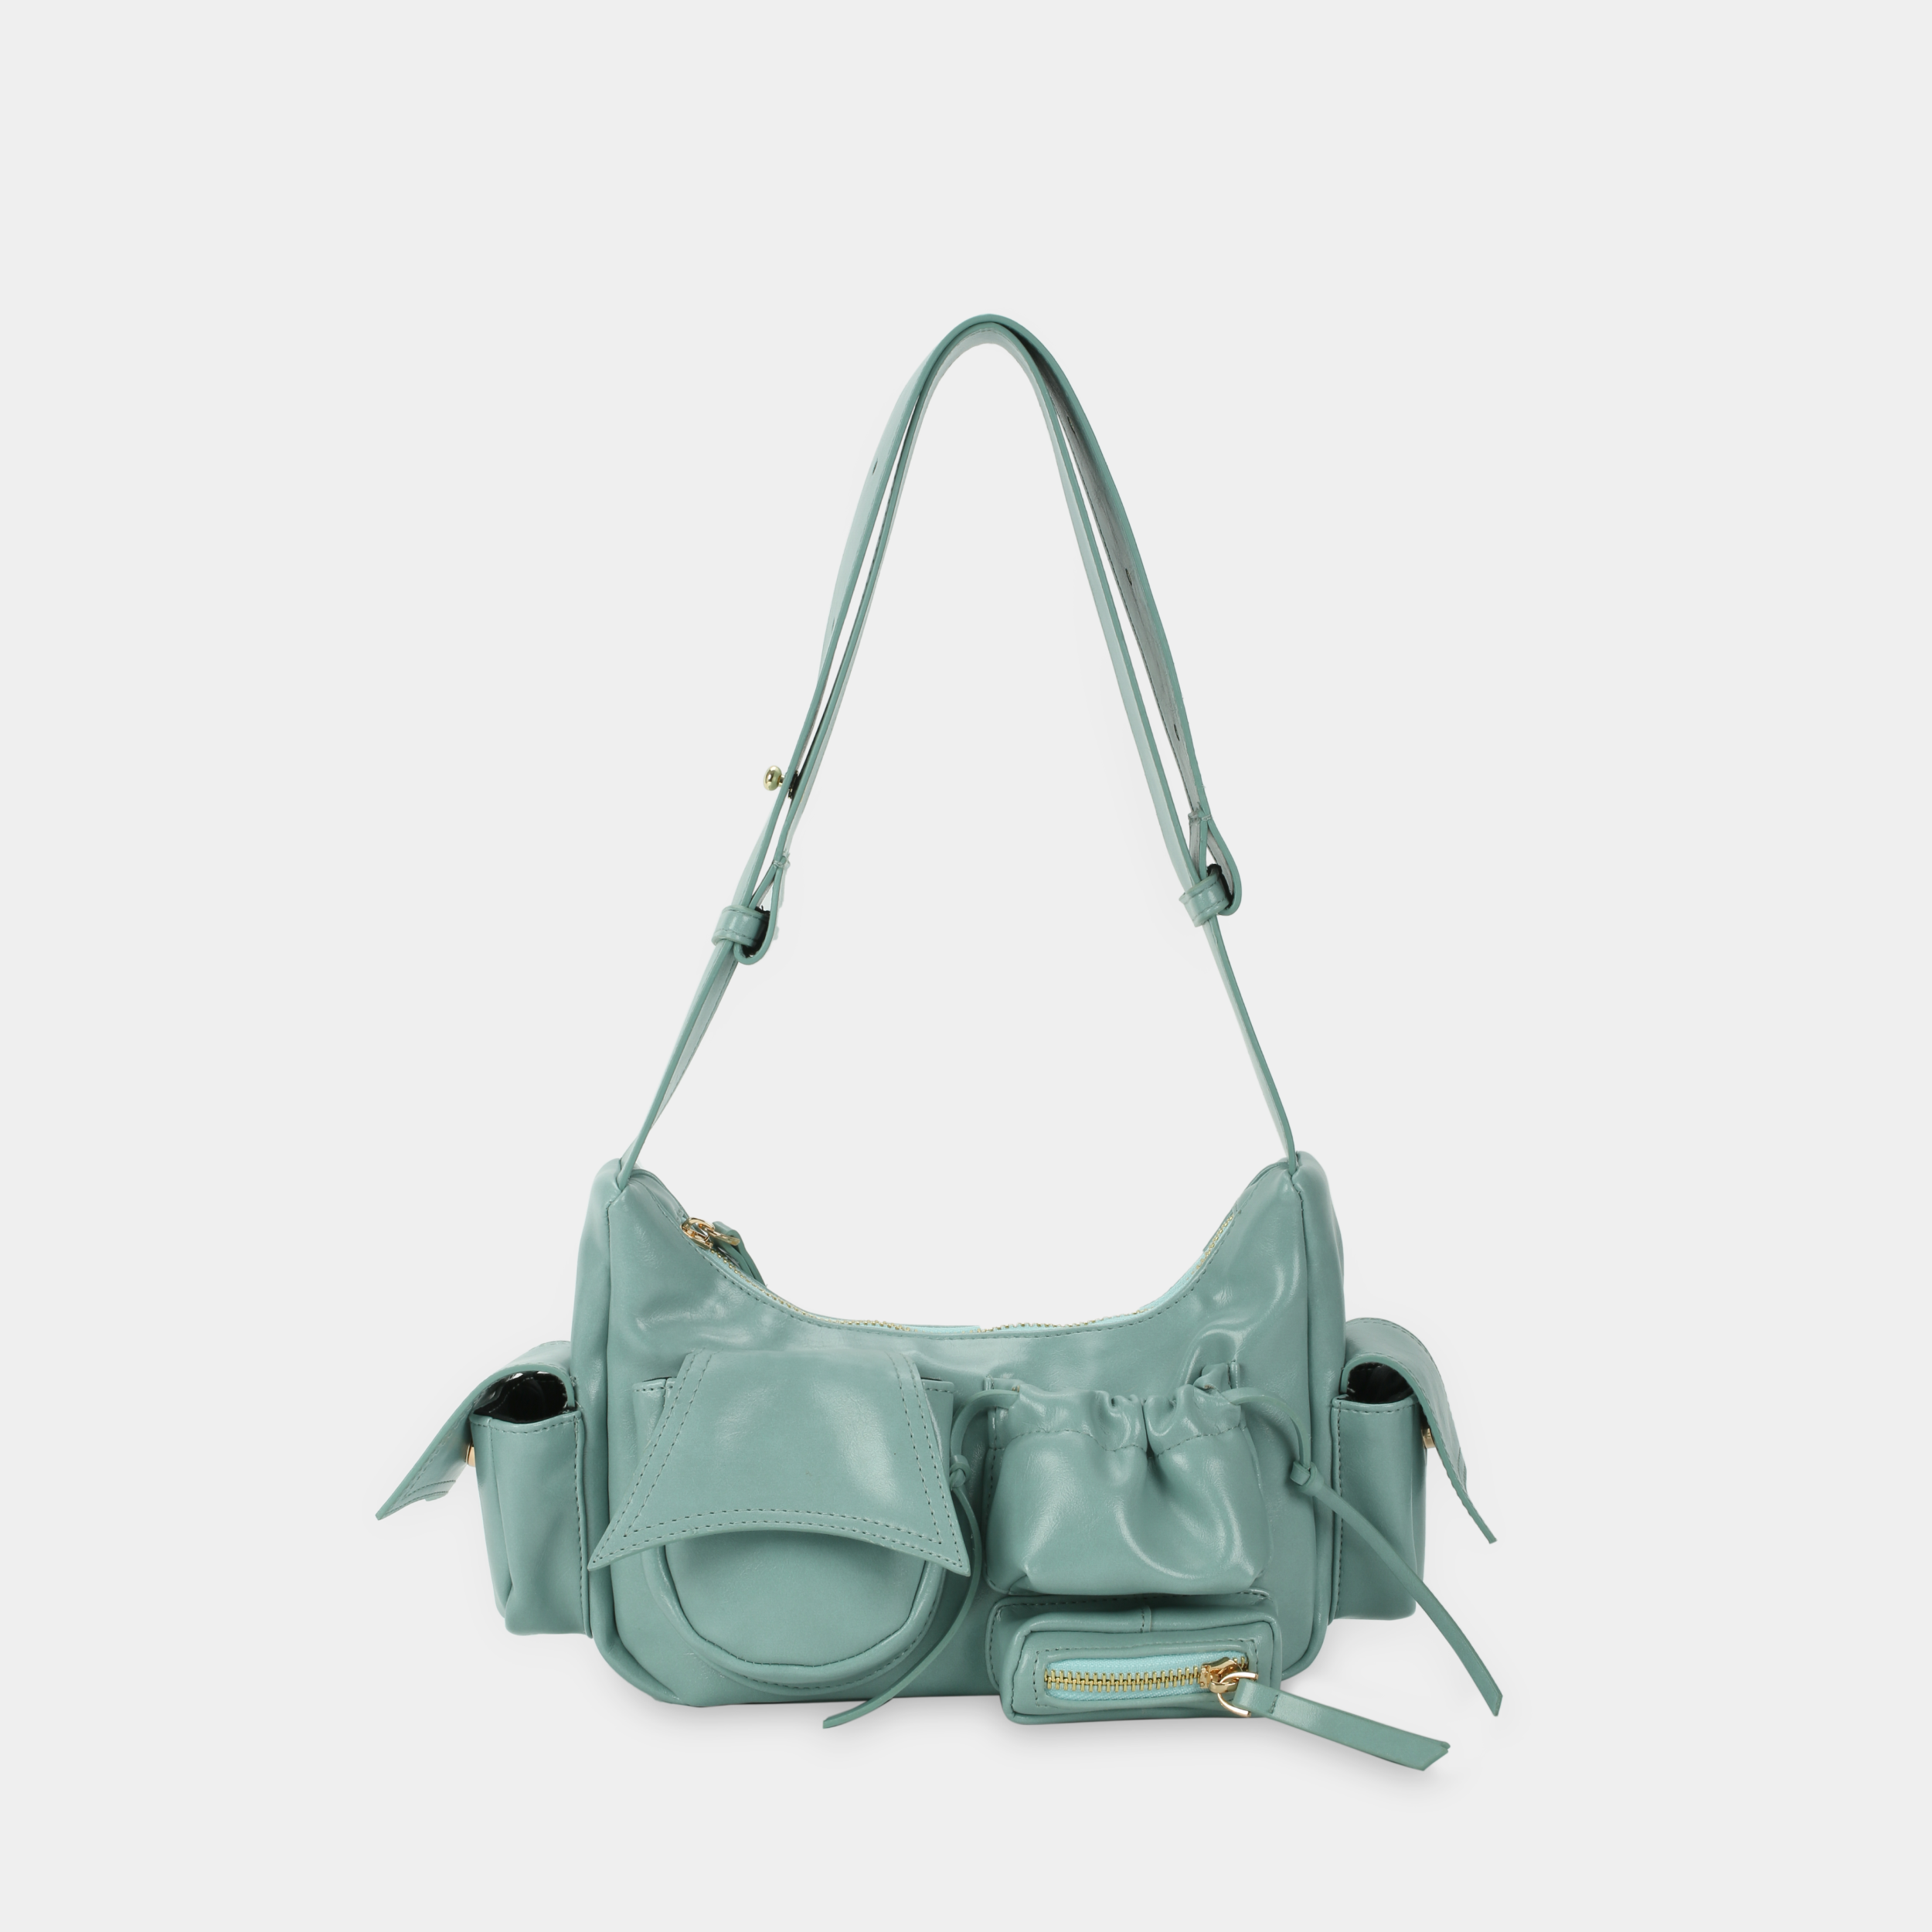 Handbag C5-Pocket size S in Pastel Jade